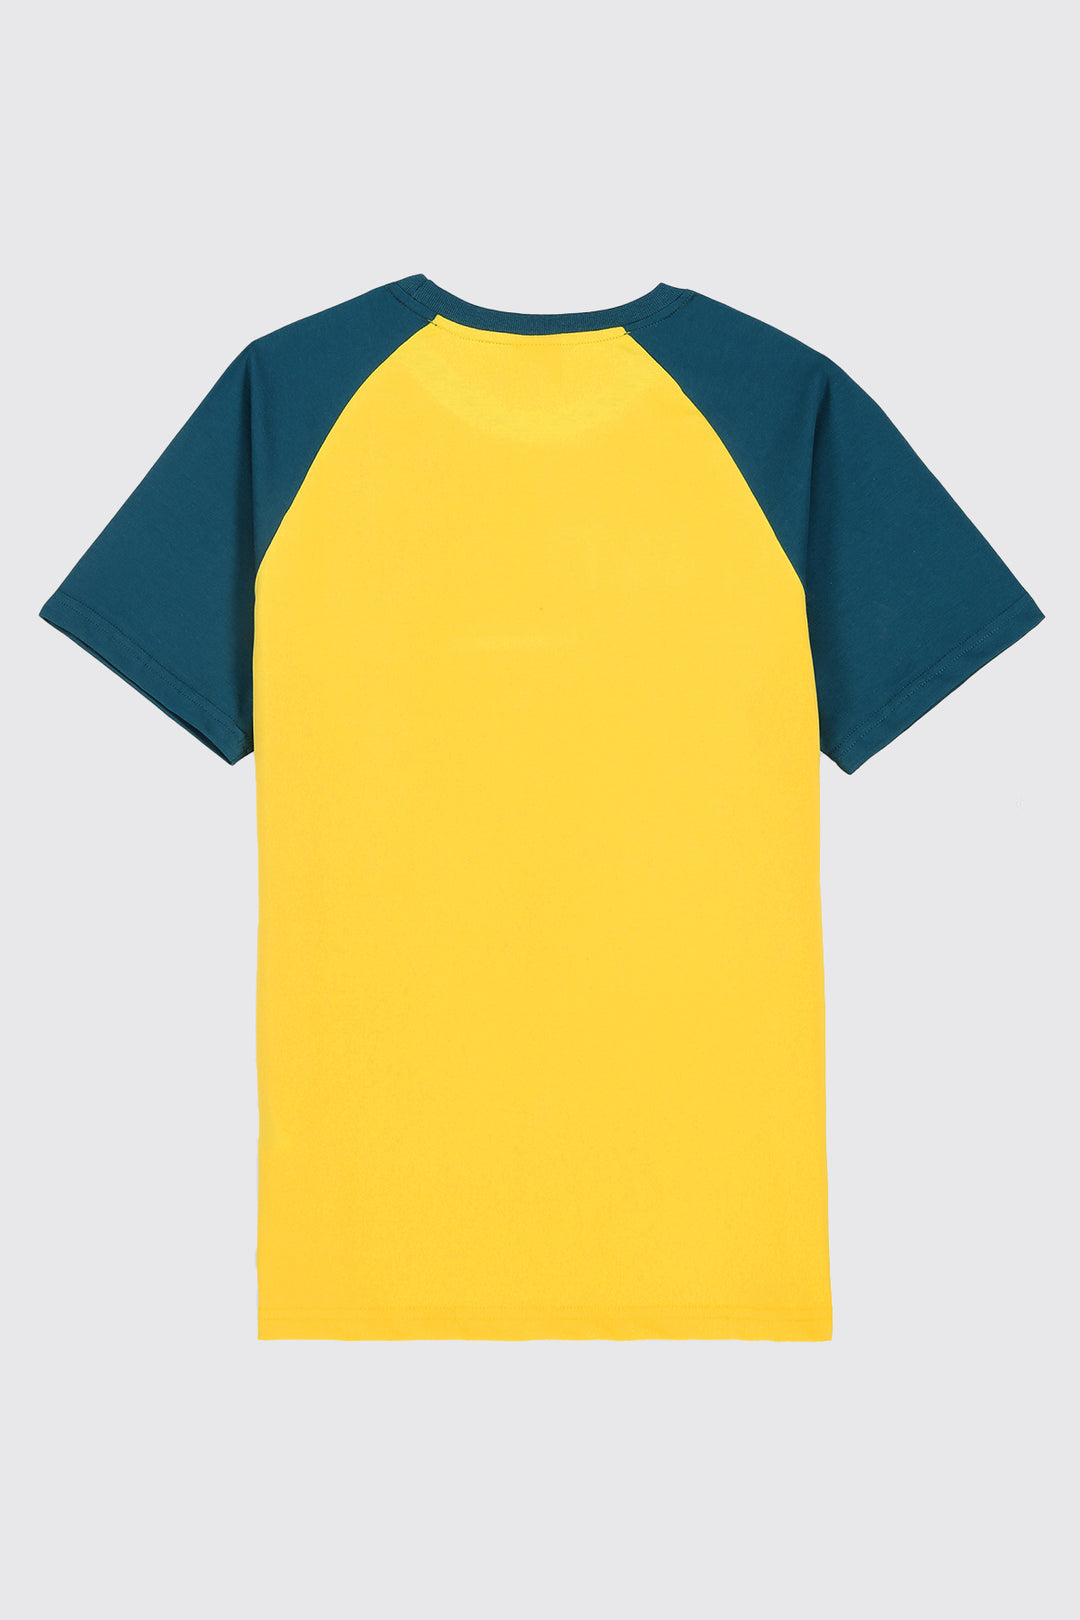 Ultimate Legacy T-Shirt (Plus Size) - A23 - MT0297P